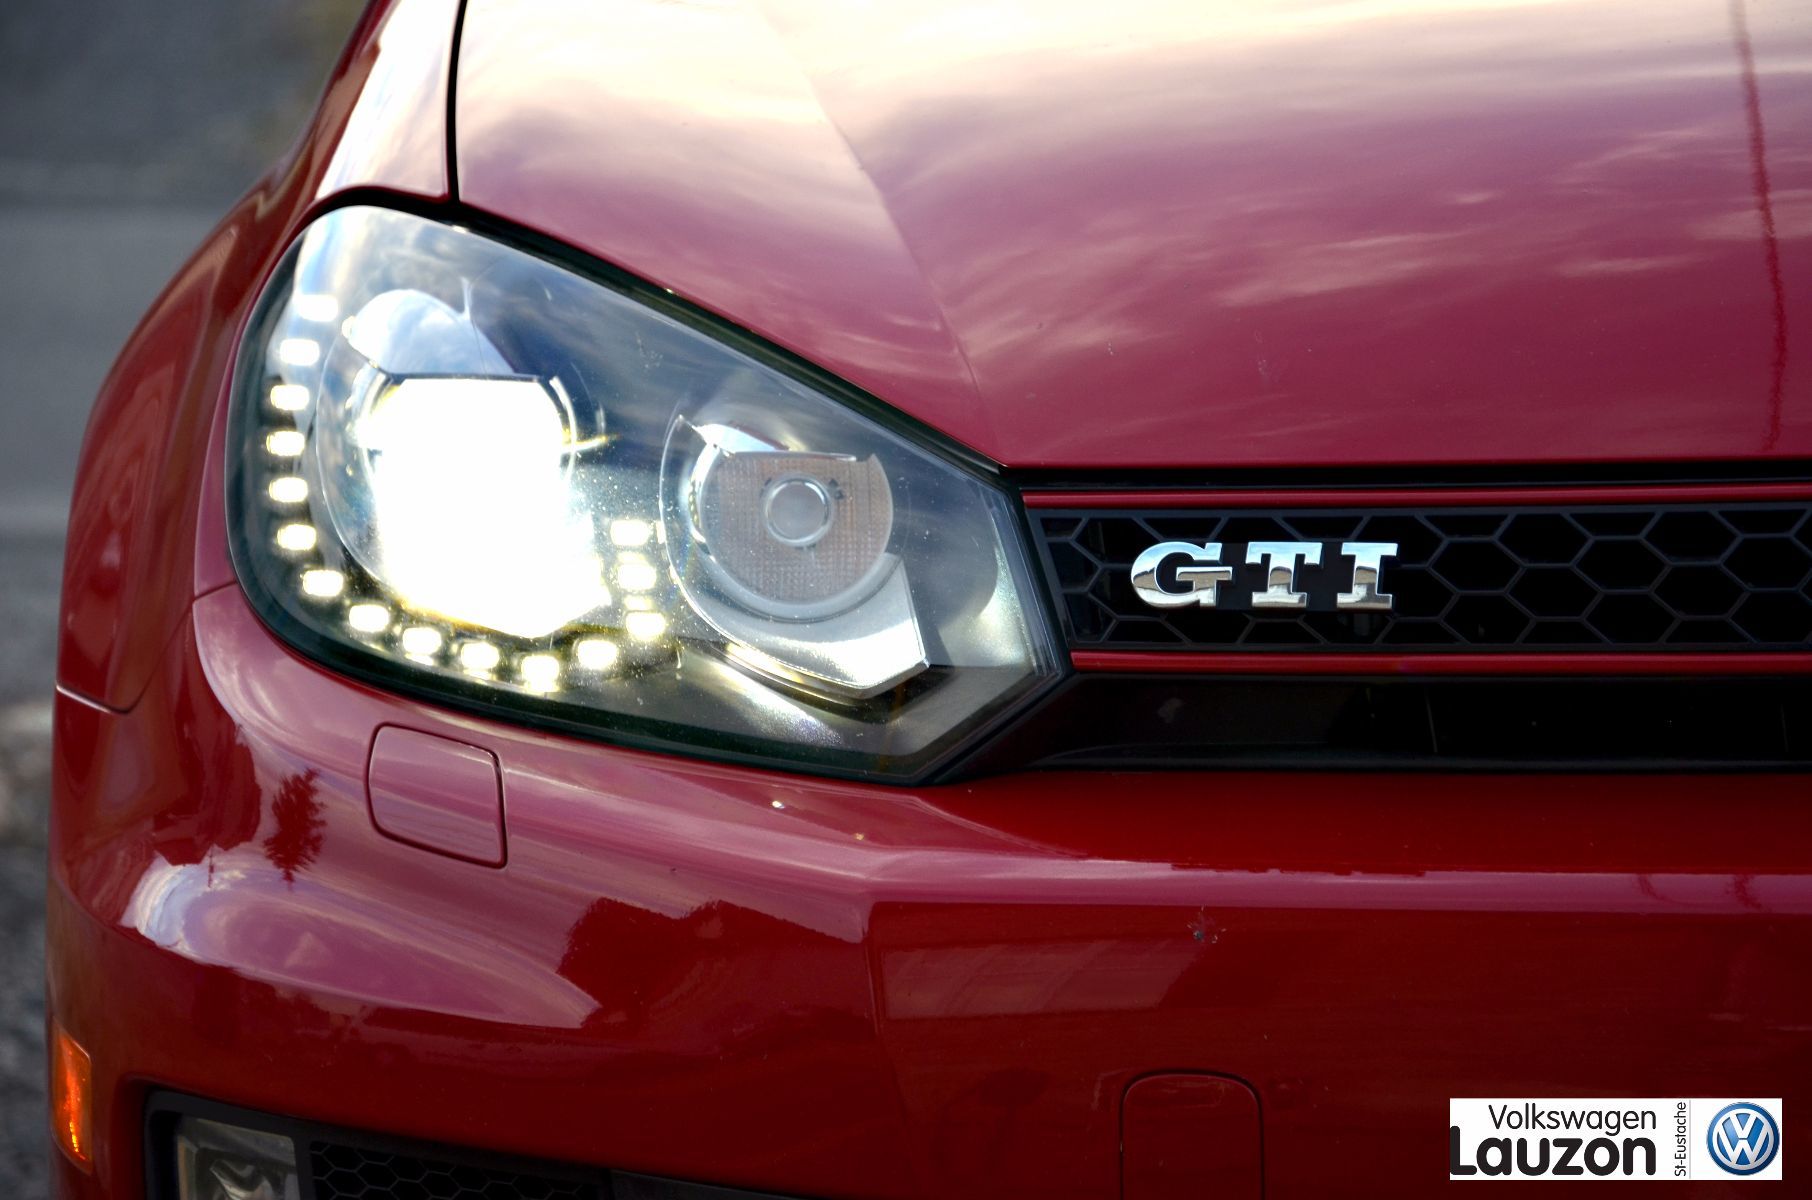 Essai routier de la Golf GTI 2013 d'occasion